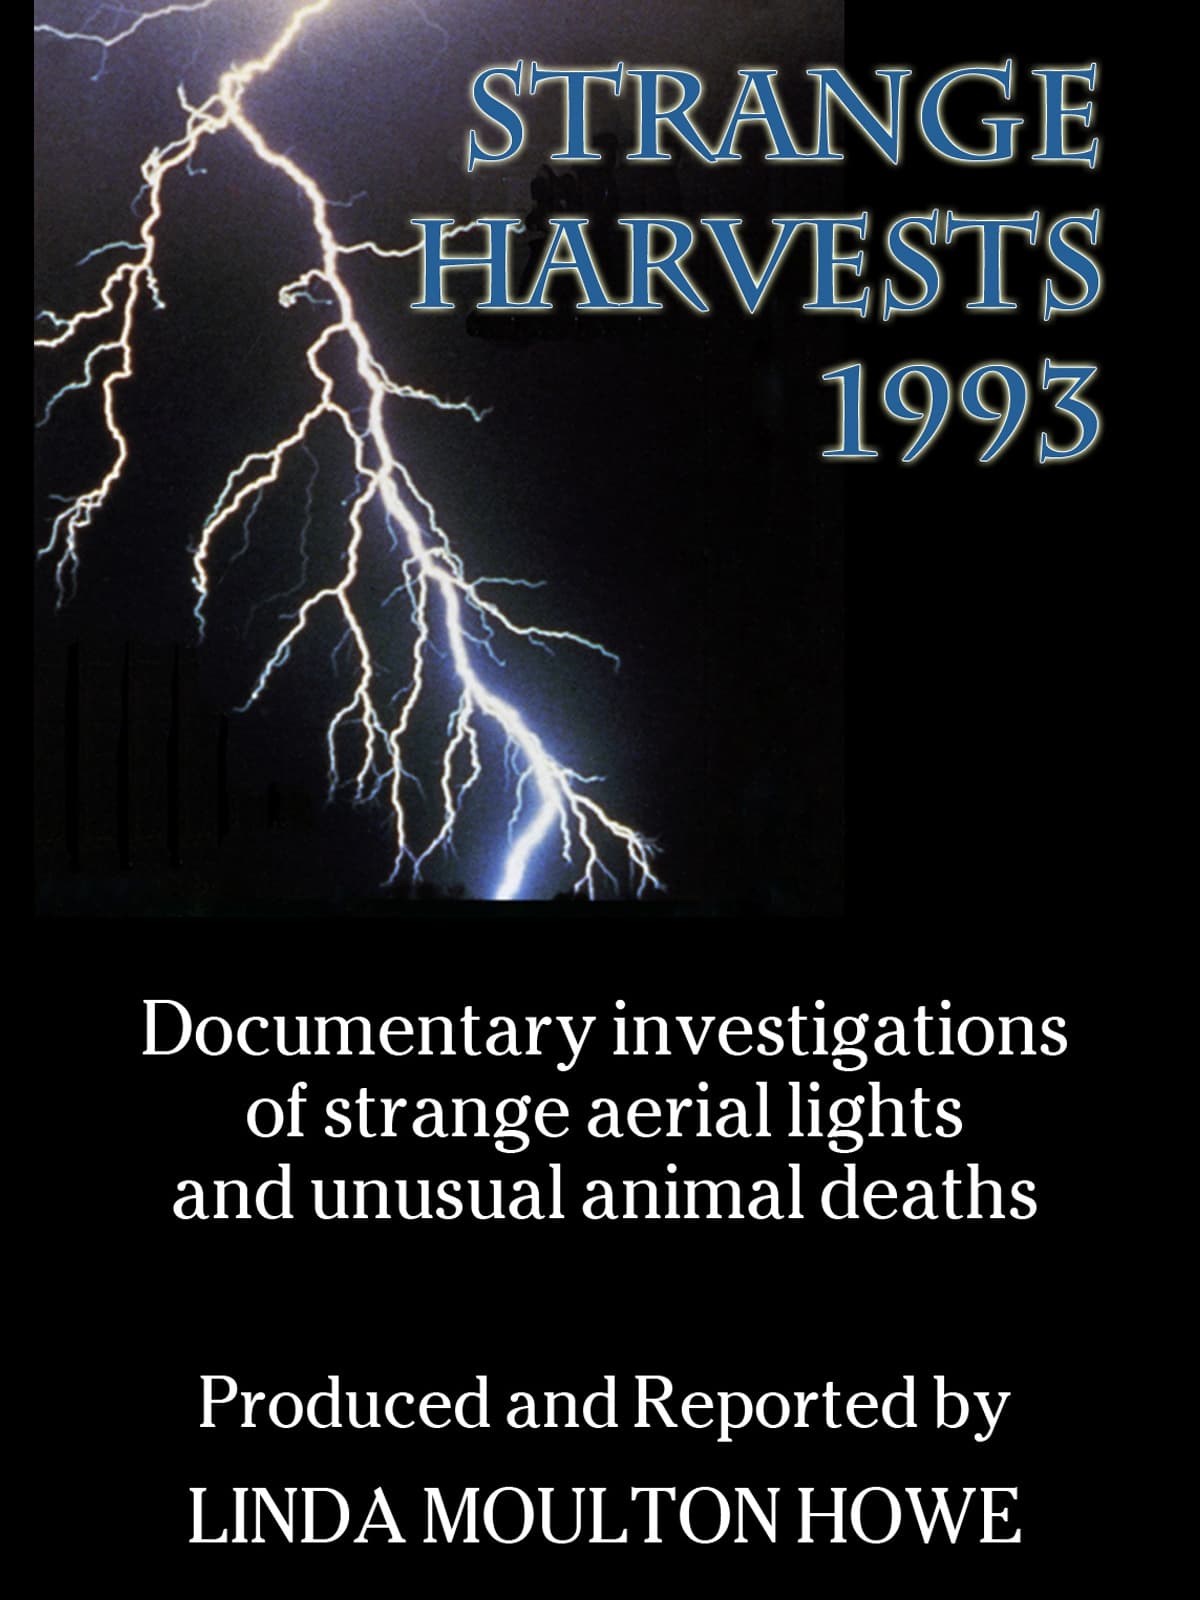 Strange Harvests 1993